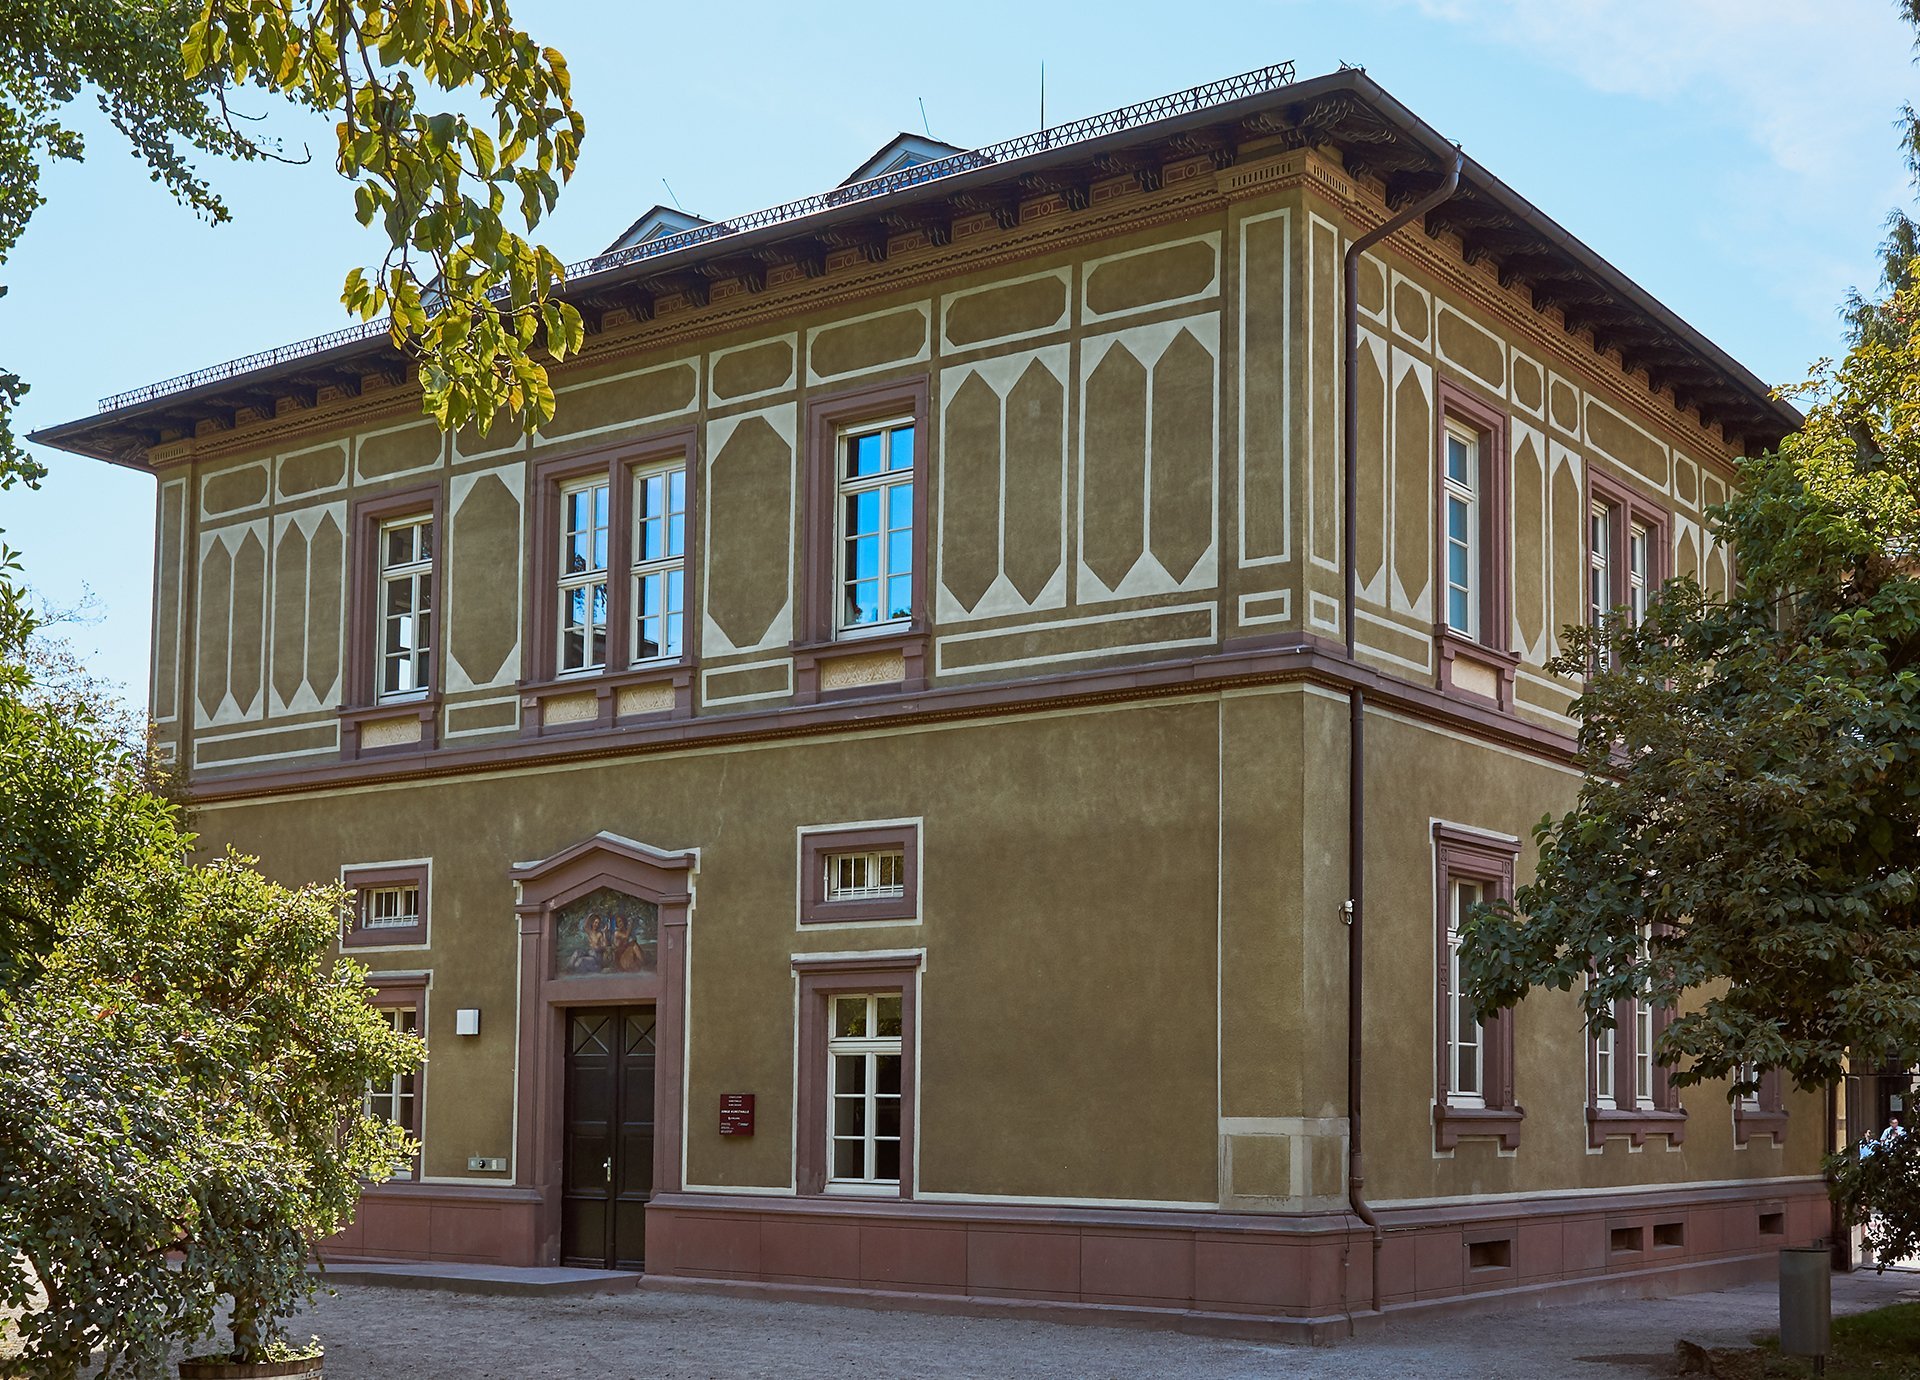 Fotografie des Gebäudes der Jungen Kunsthalle. Das Haus ist zwei stöckig und olivgrün gestrichen.